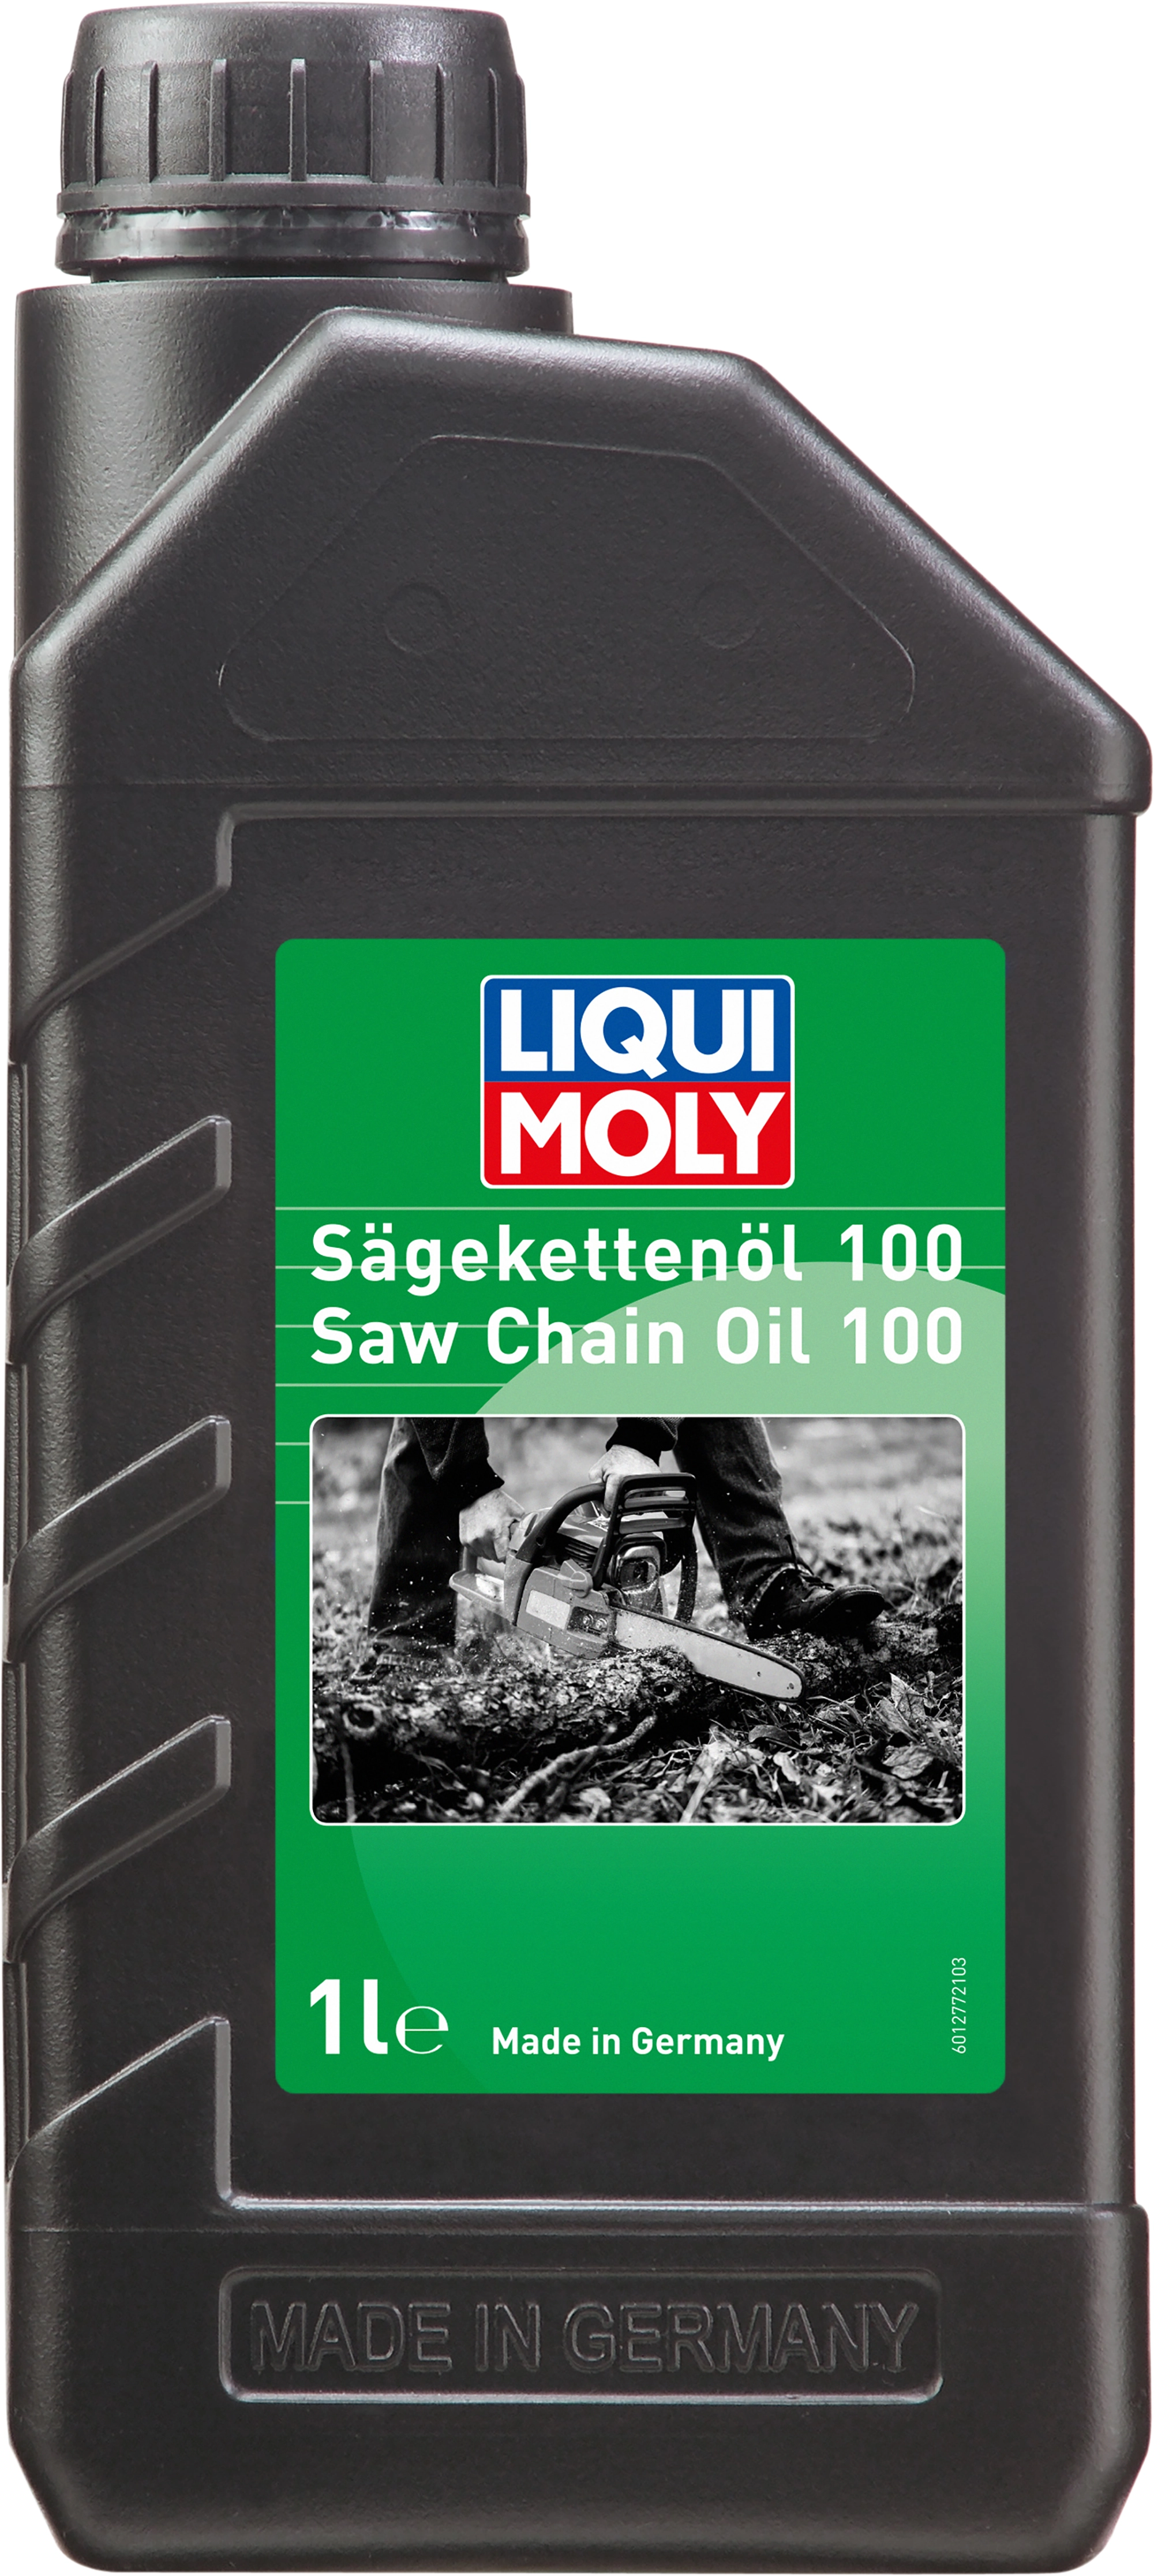 Liqui Moly Sägekettenöl 100 1 l kaufen bei OBI